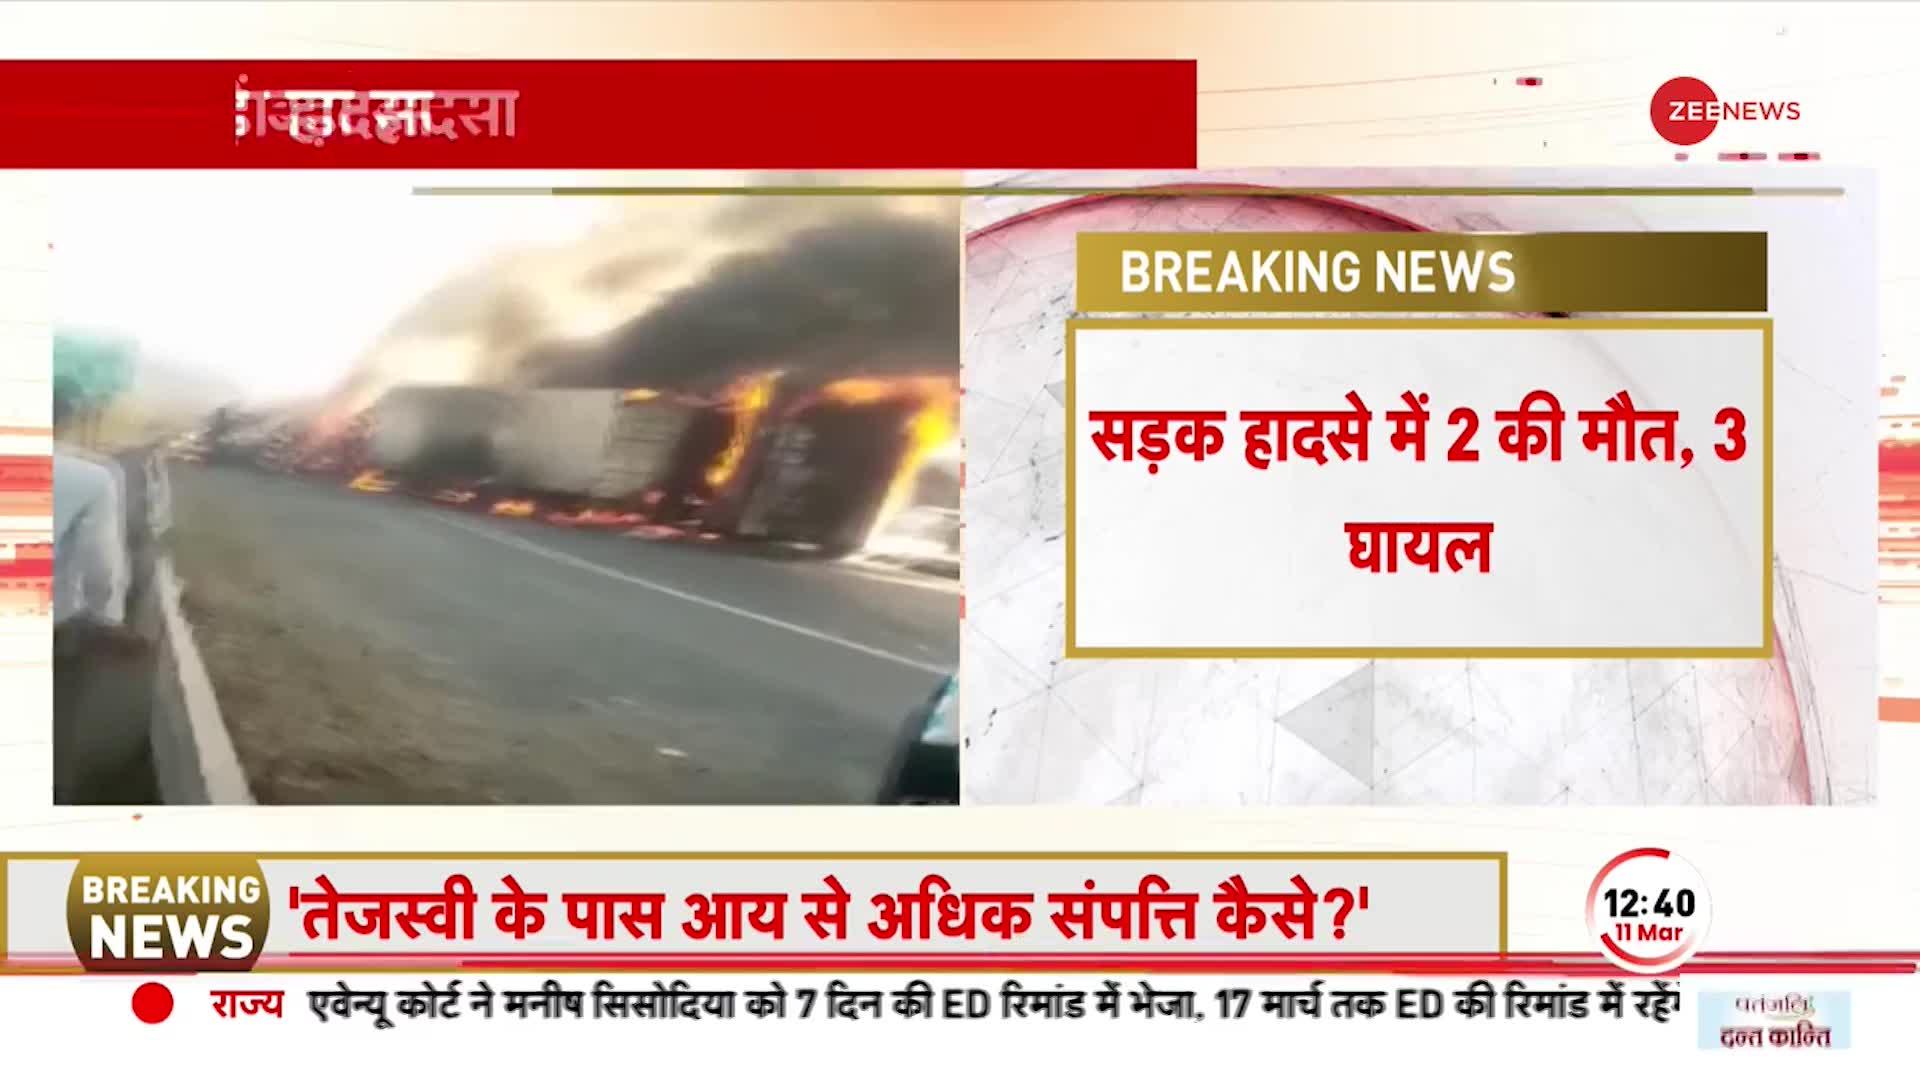 Breaking News: MP के धार में बड़ा सड़क हादसा, 2 की मौत तीन घायल | Latest Hindi News